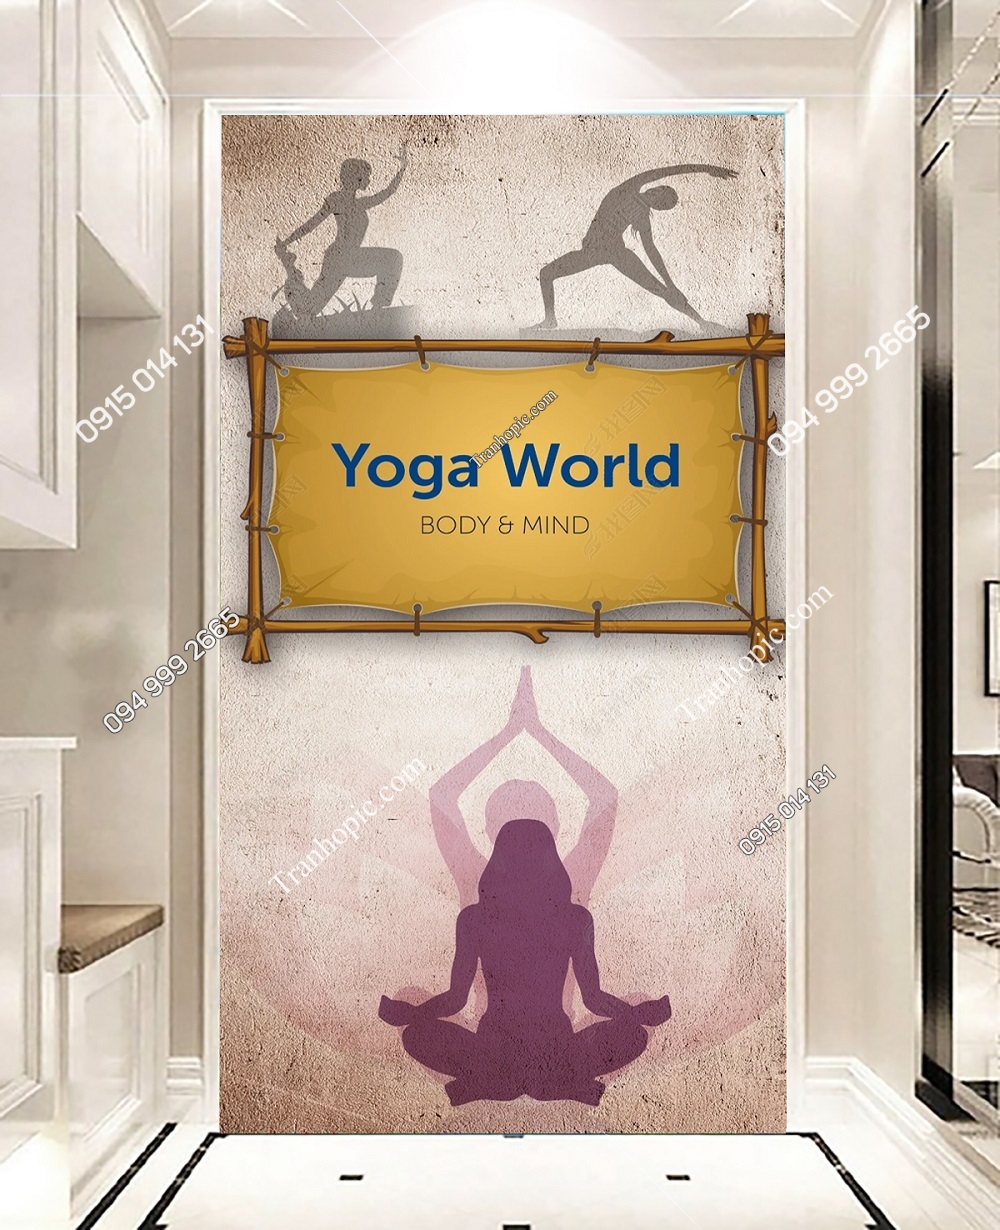 Tranh yoga world dán tường khổ dọc OP_27687640